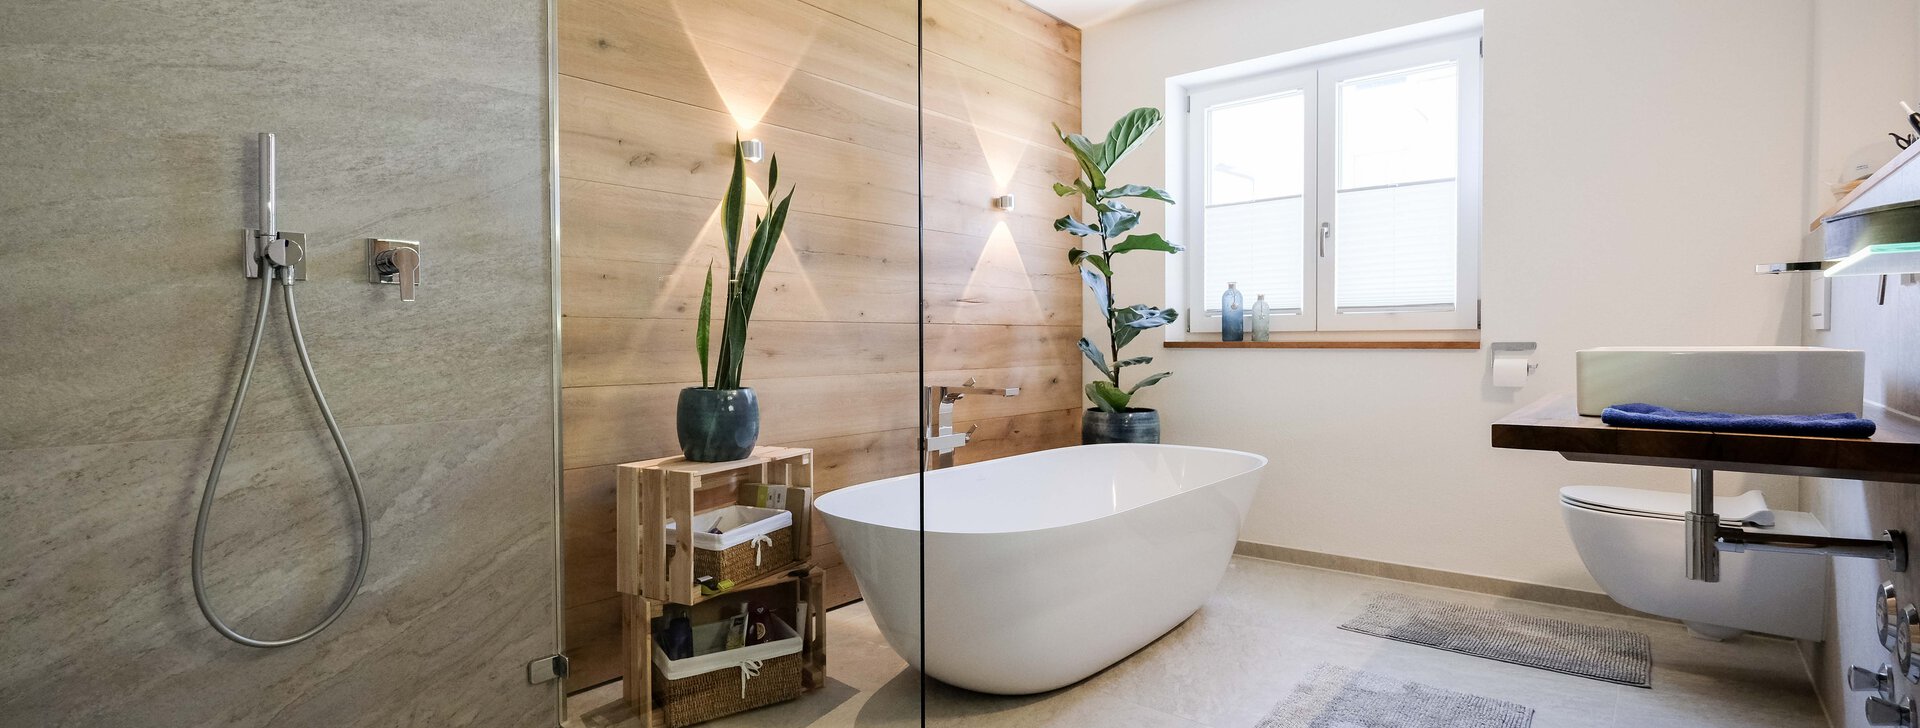 Badezimmer mit freistehender Badewanne - Gartenwohnung Ruhpolding | © HausBauHaus GmbH